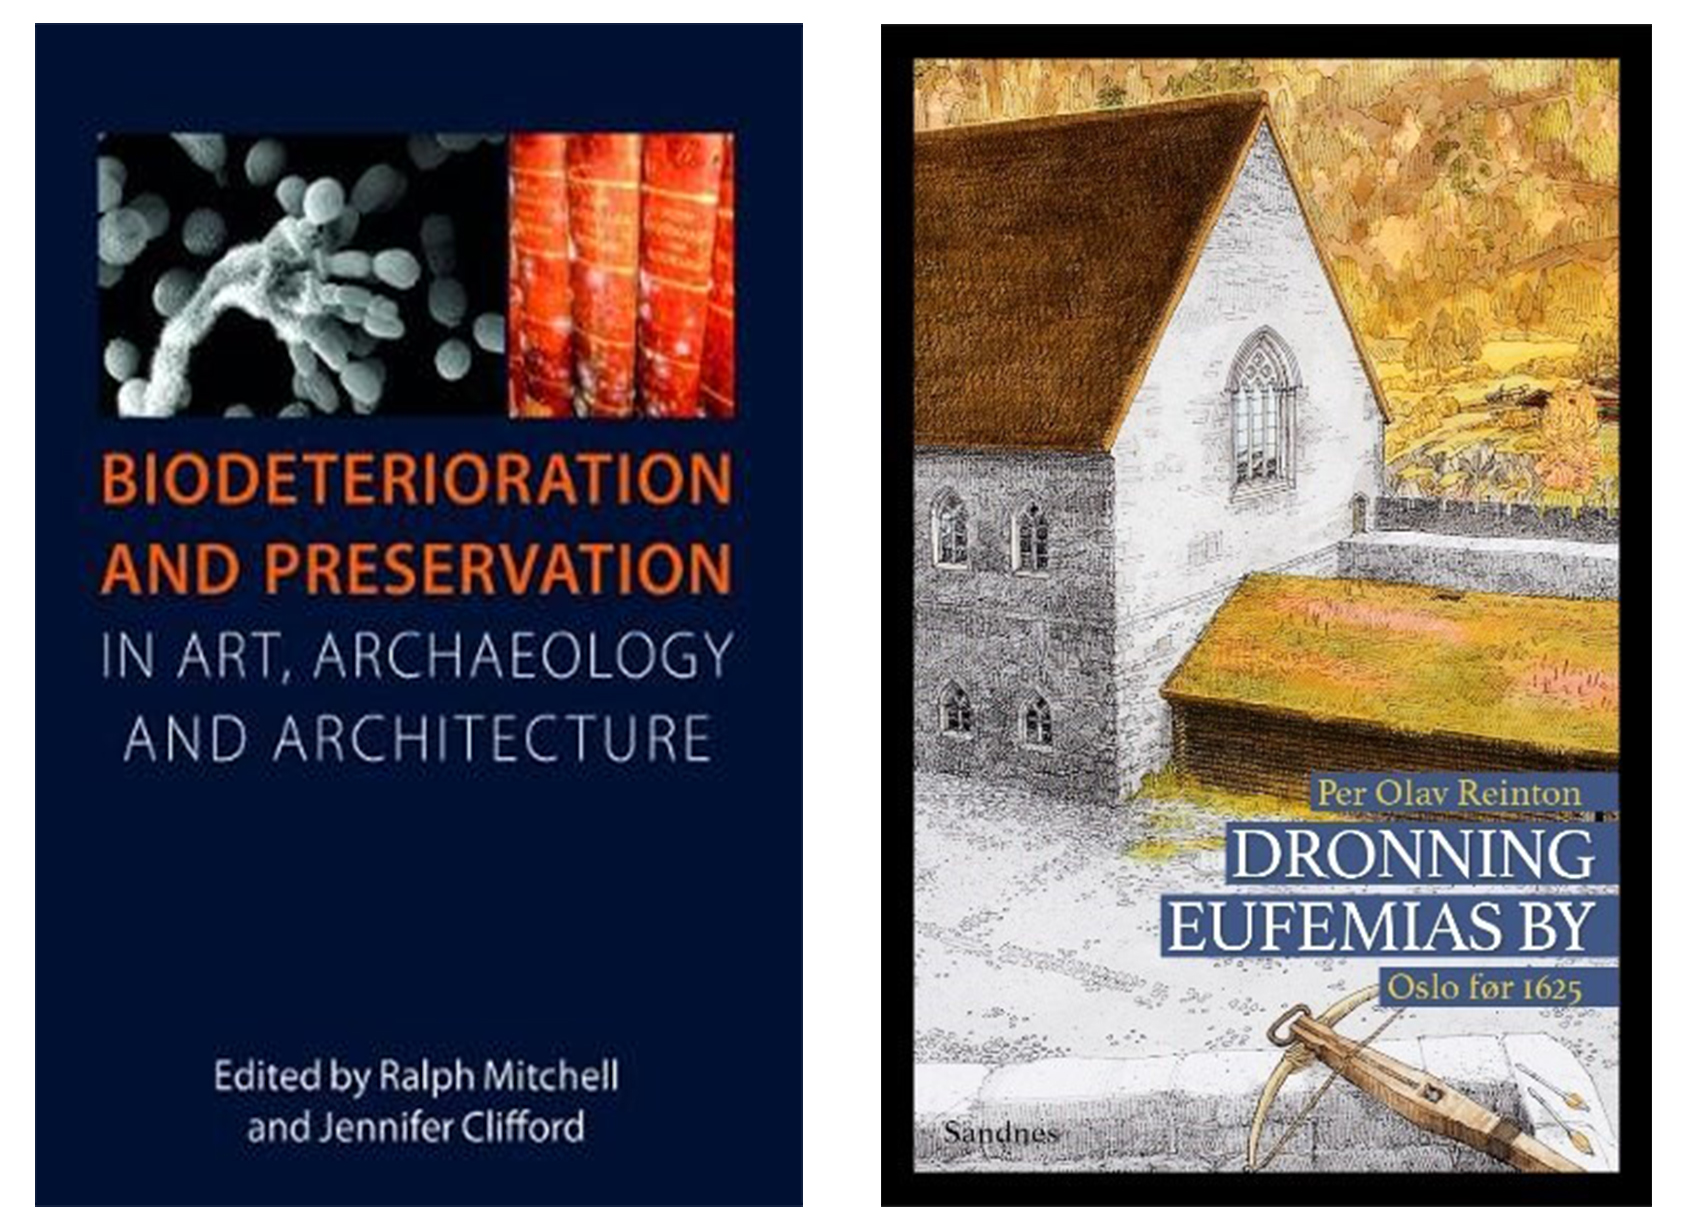 Bilde av to bøker Biodeterioration and preservation og Dronning Eufemias by